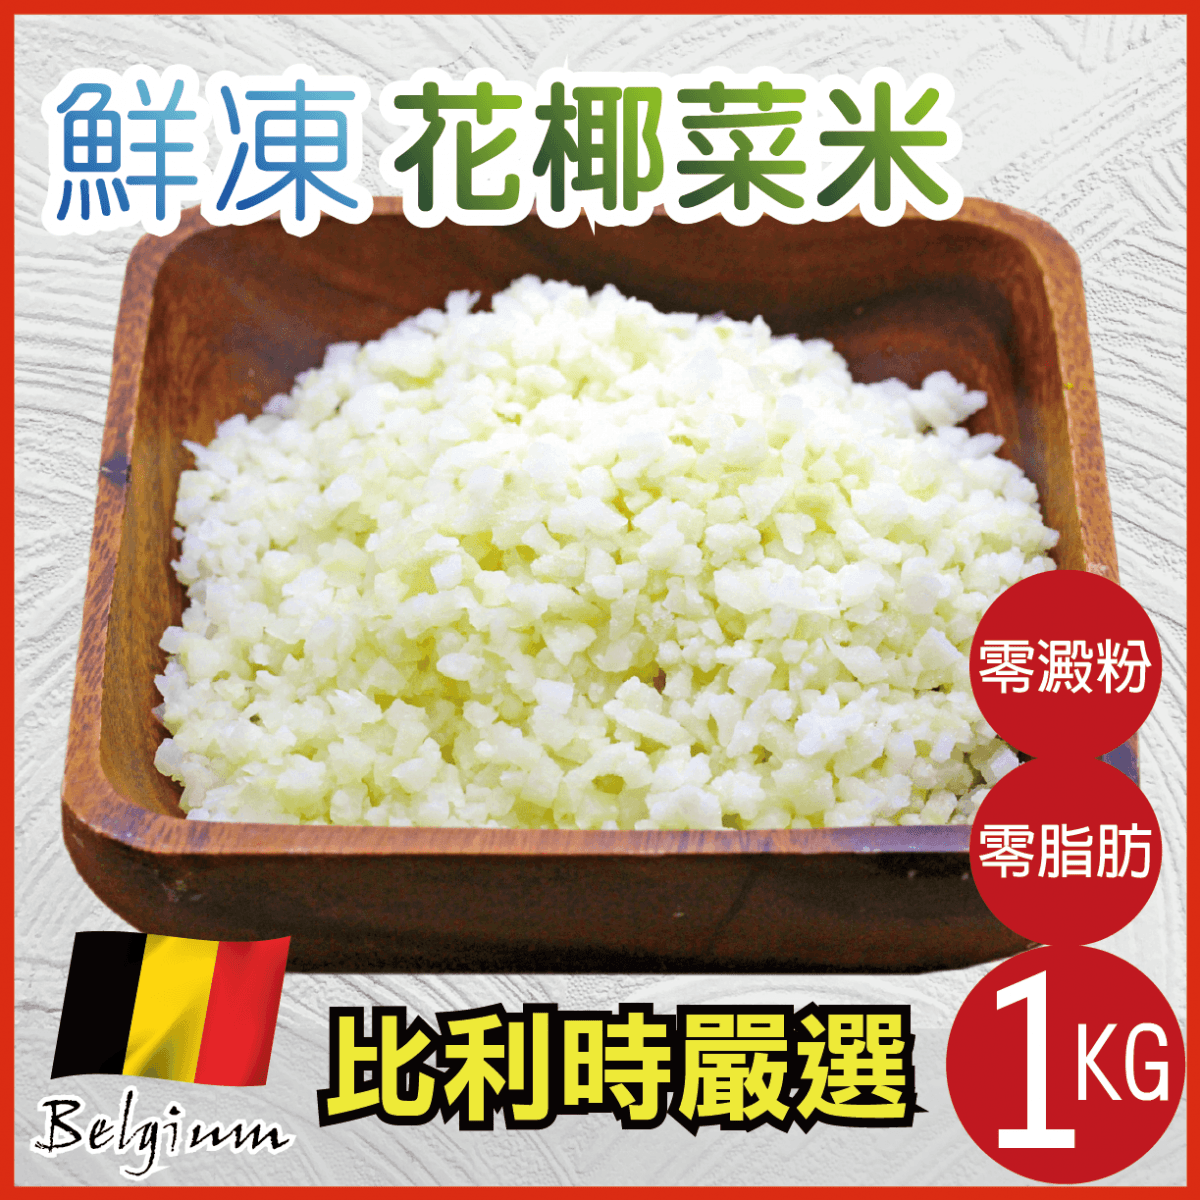 【田食原】比利時花椰菜米1kg 健康減醣 健身餐 低熱量 零脂肪 0